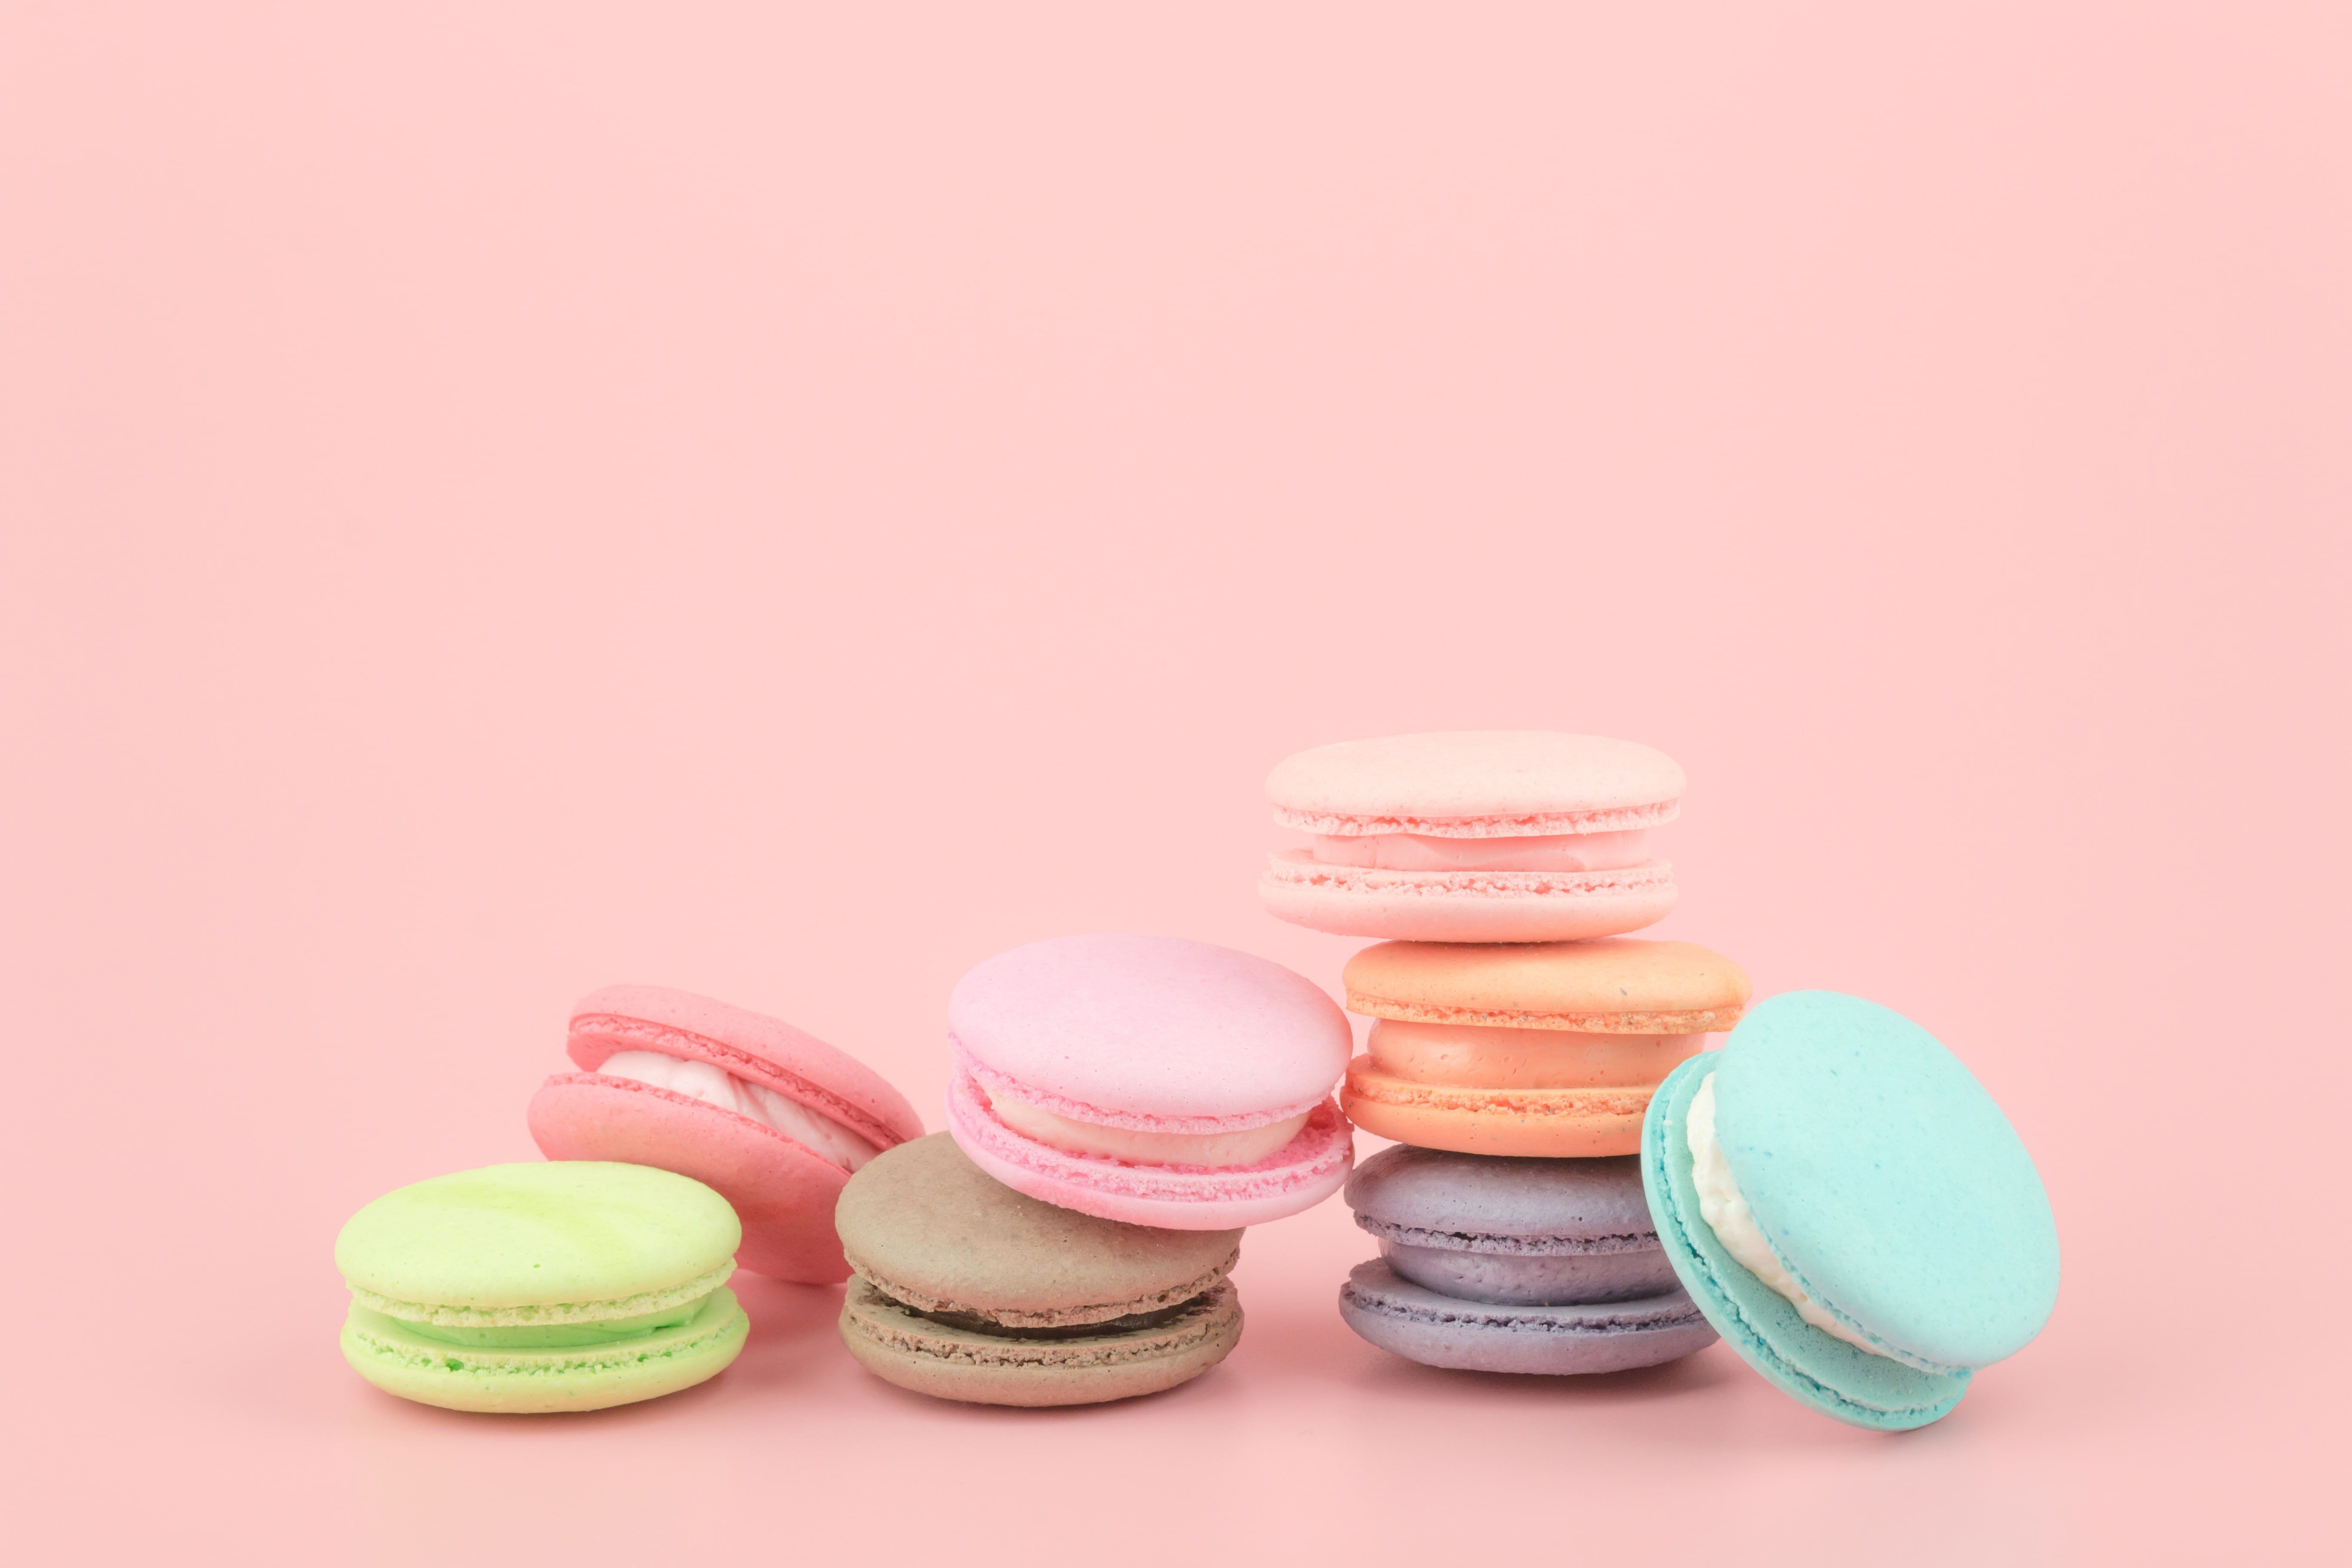 colorful #dessert #pink #cakes #sweet #sweet #dessert #macaroon #french # macaron #macaroon K #wallpaper #hdwal. Macaron wallpaper, Macaroon wallpaper, Macarons